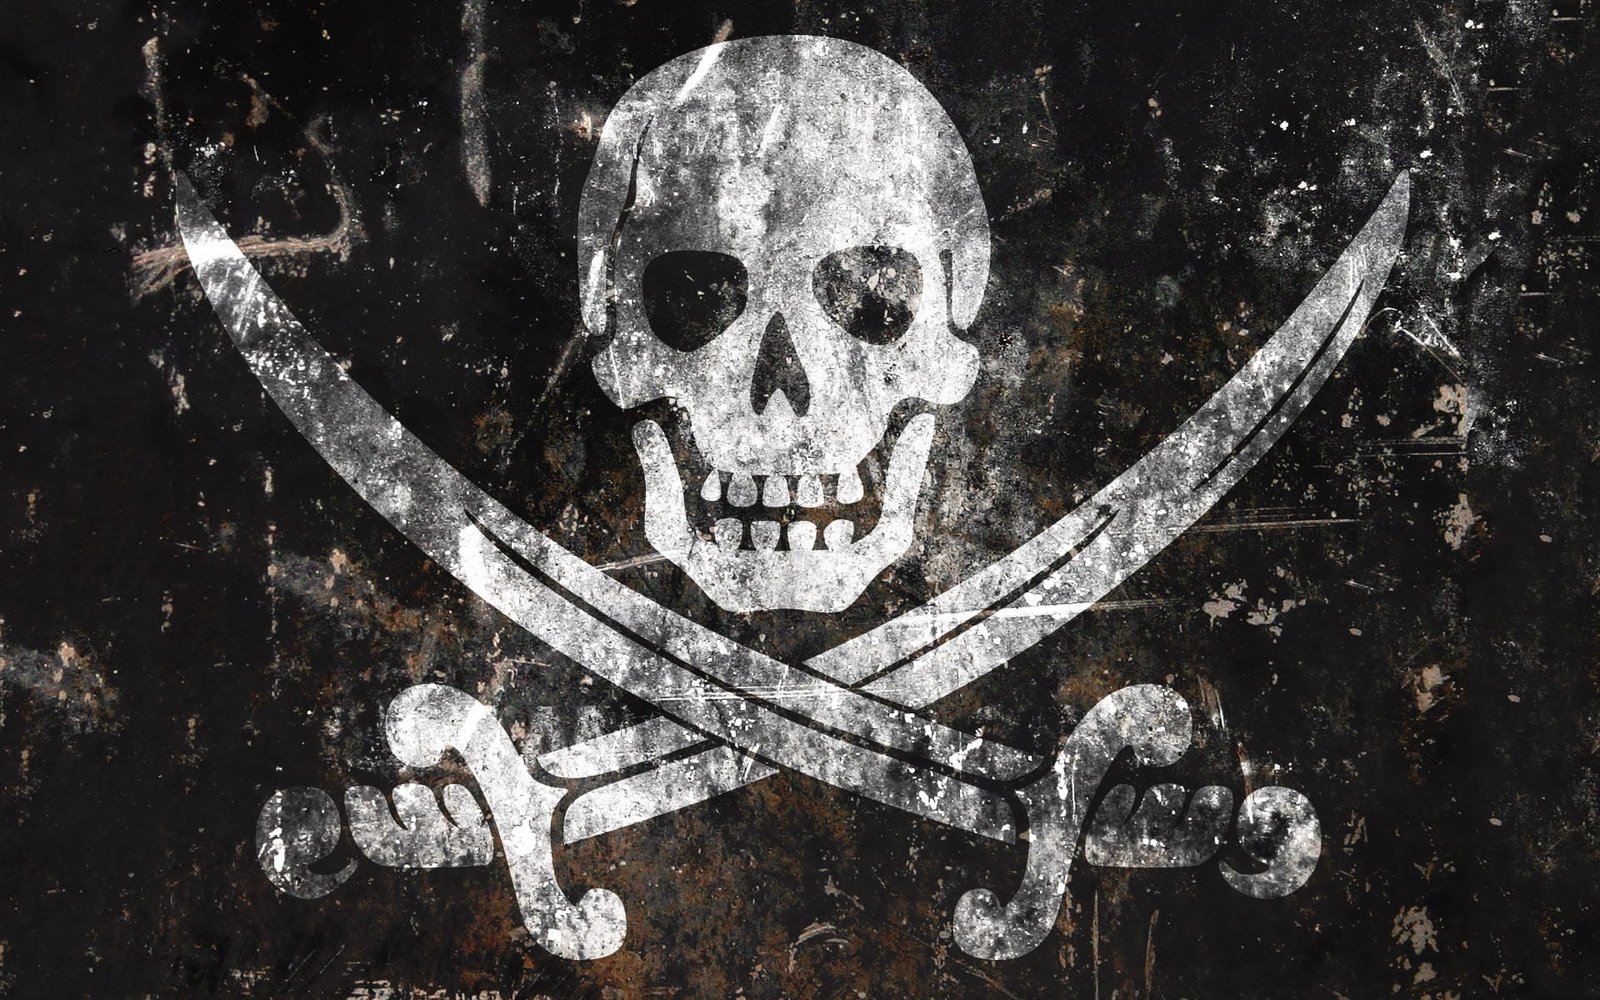 Justificando a pirataria